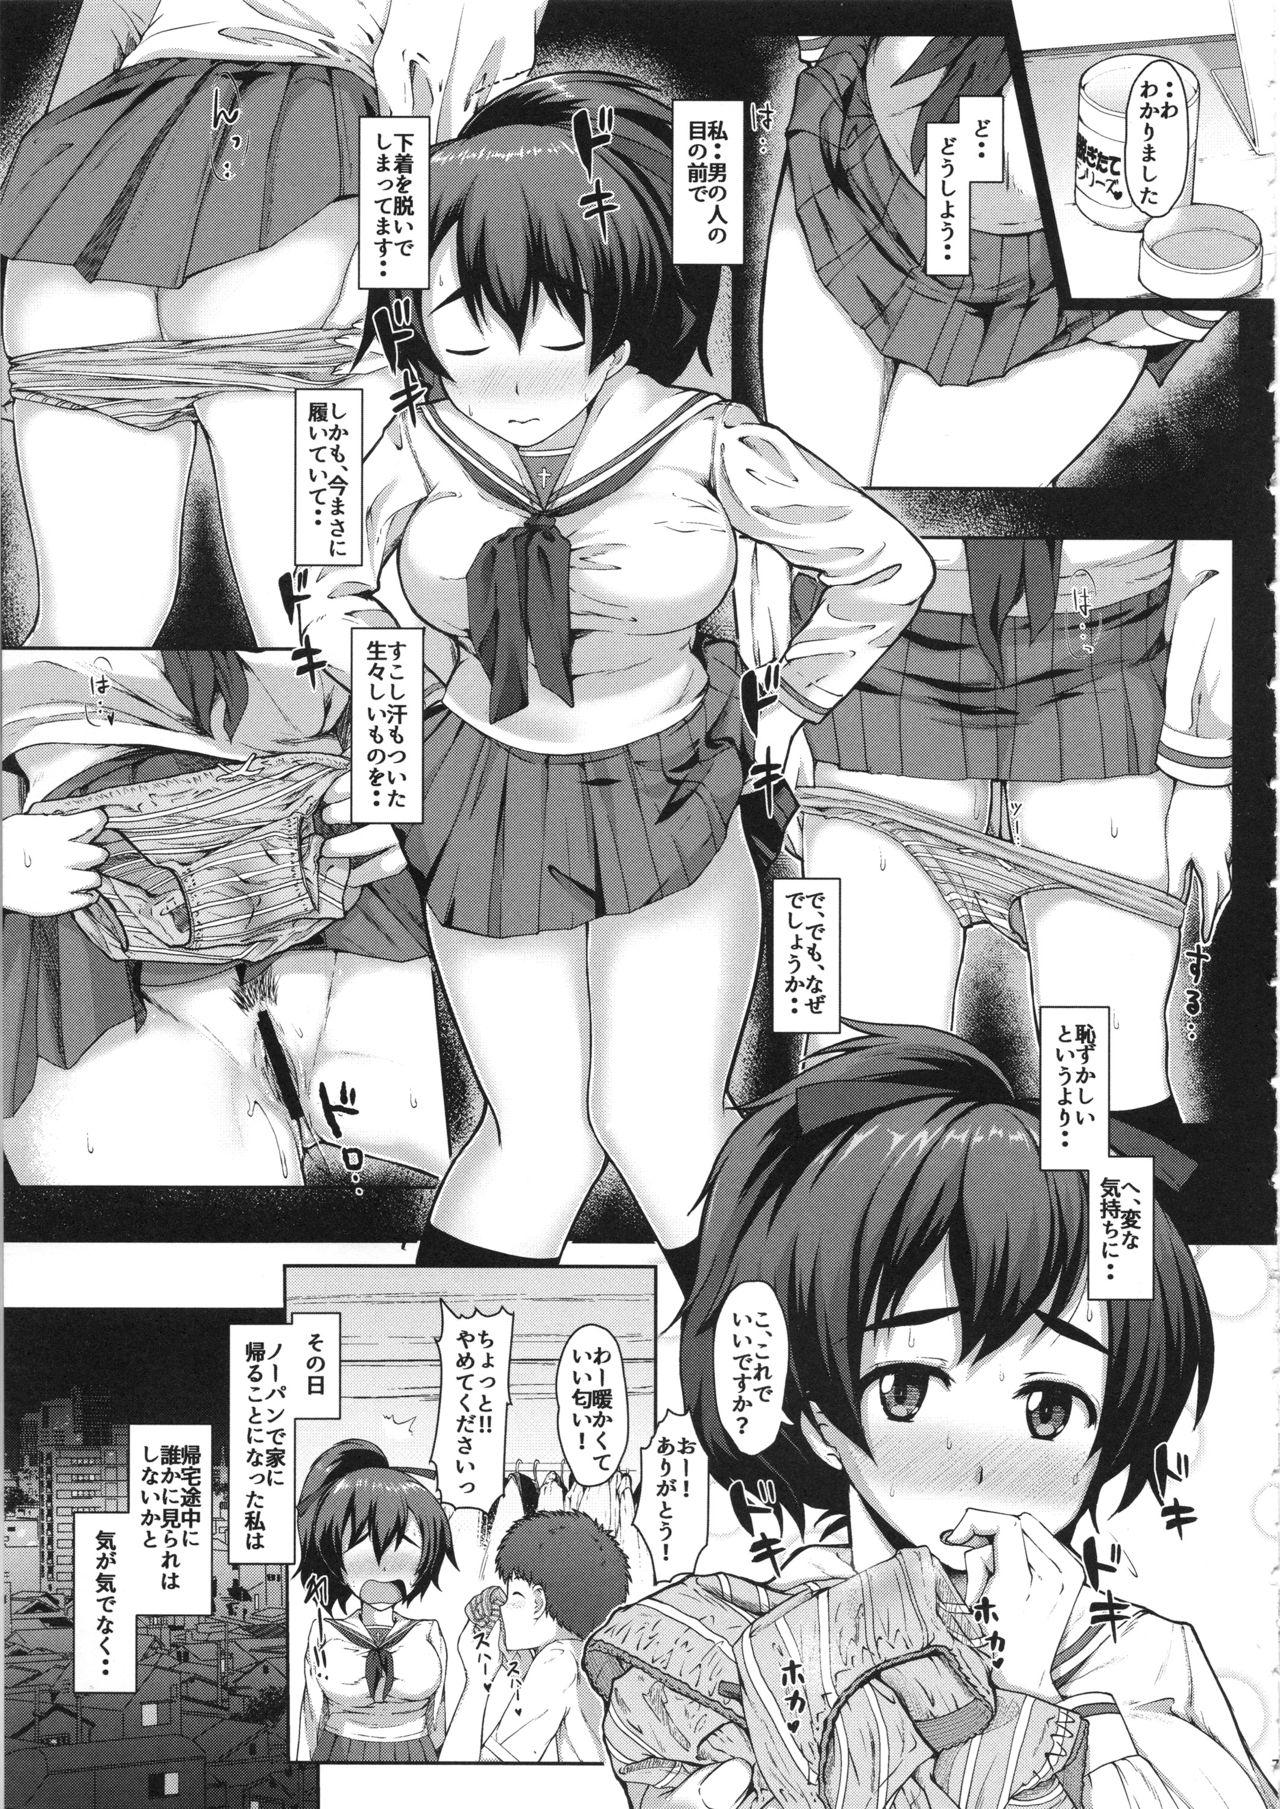 Scandal Yuzu-chan no Renkinjutsu - Girls und panzer Spying - Page 6